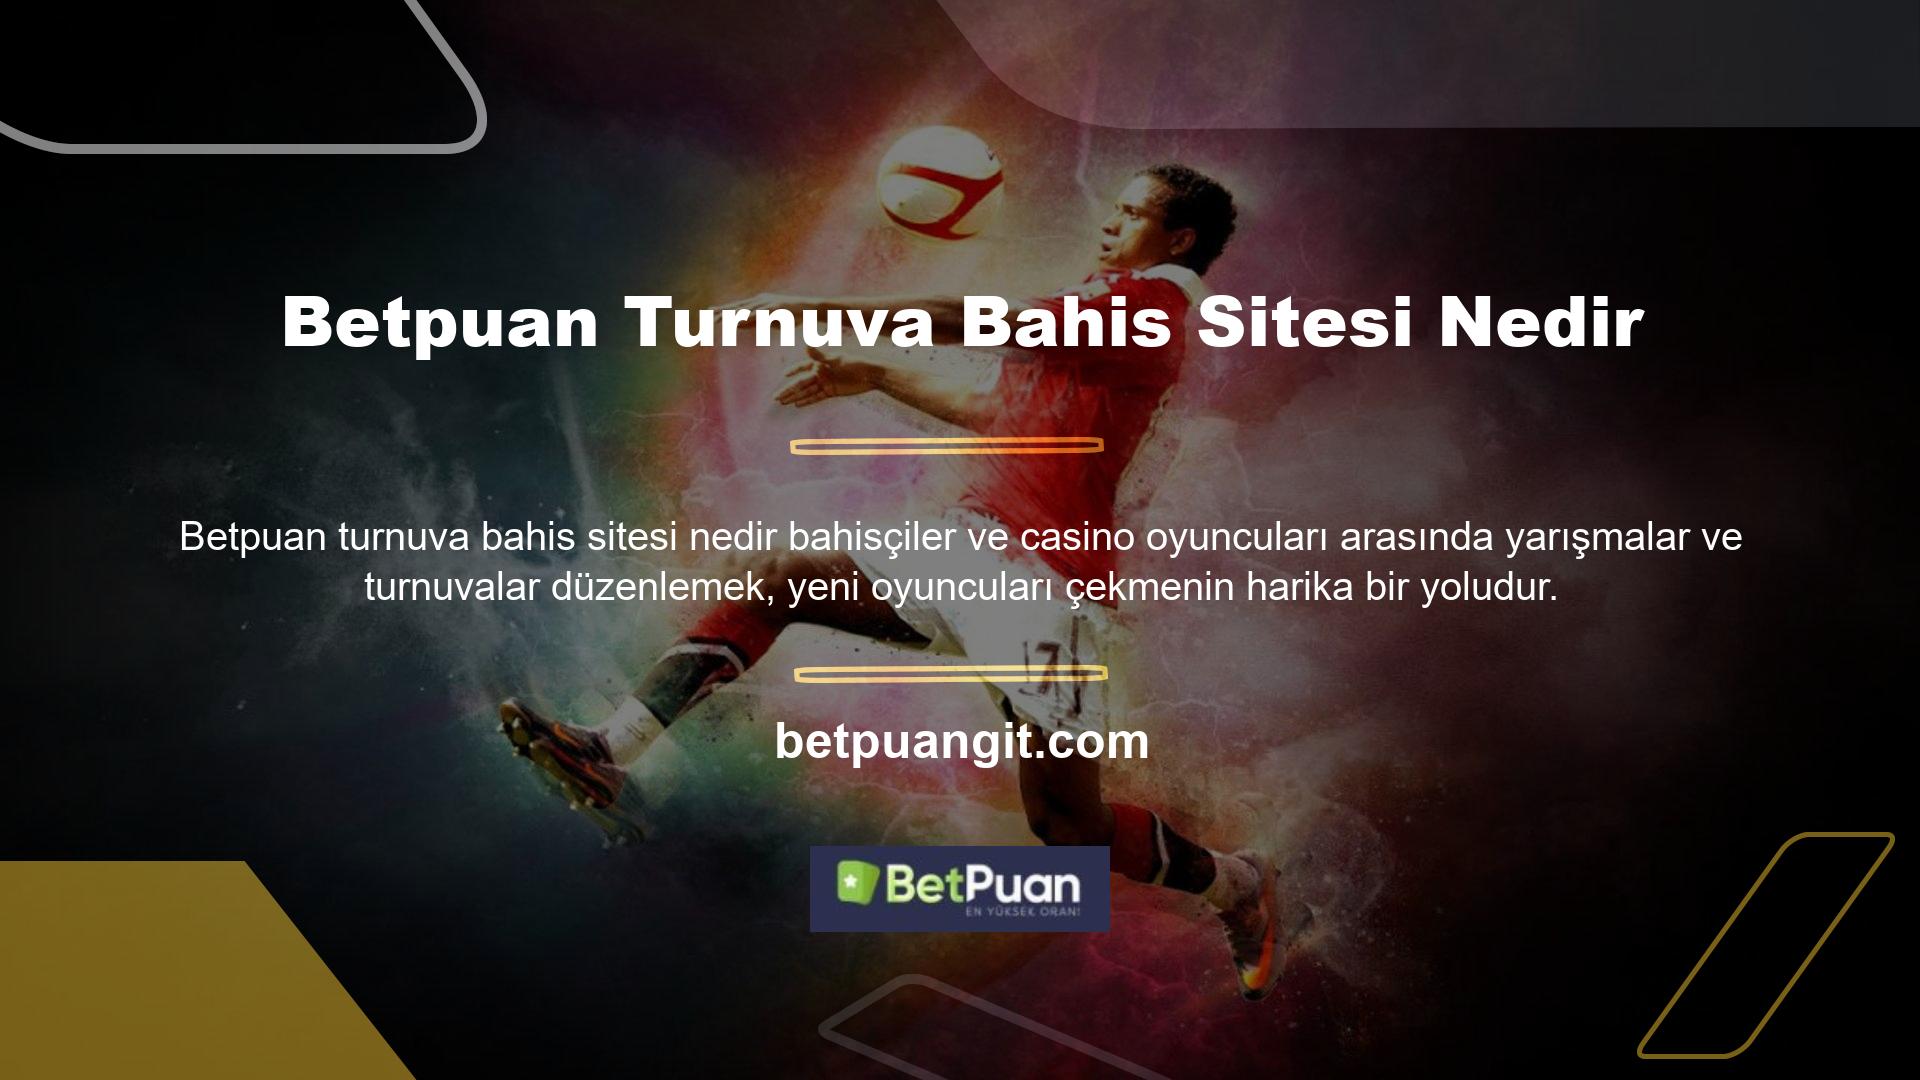 Betpuan Turnuva Bahis Sitesi Nedir? Kullanıcılarımız arasında aylık çarpanlı turnuvalar düzenliyoruz